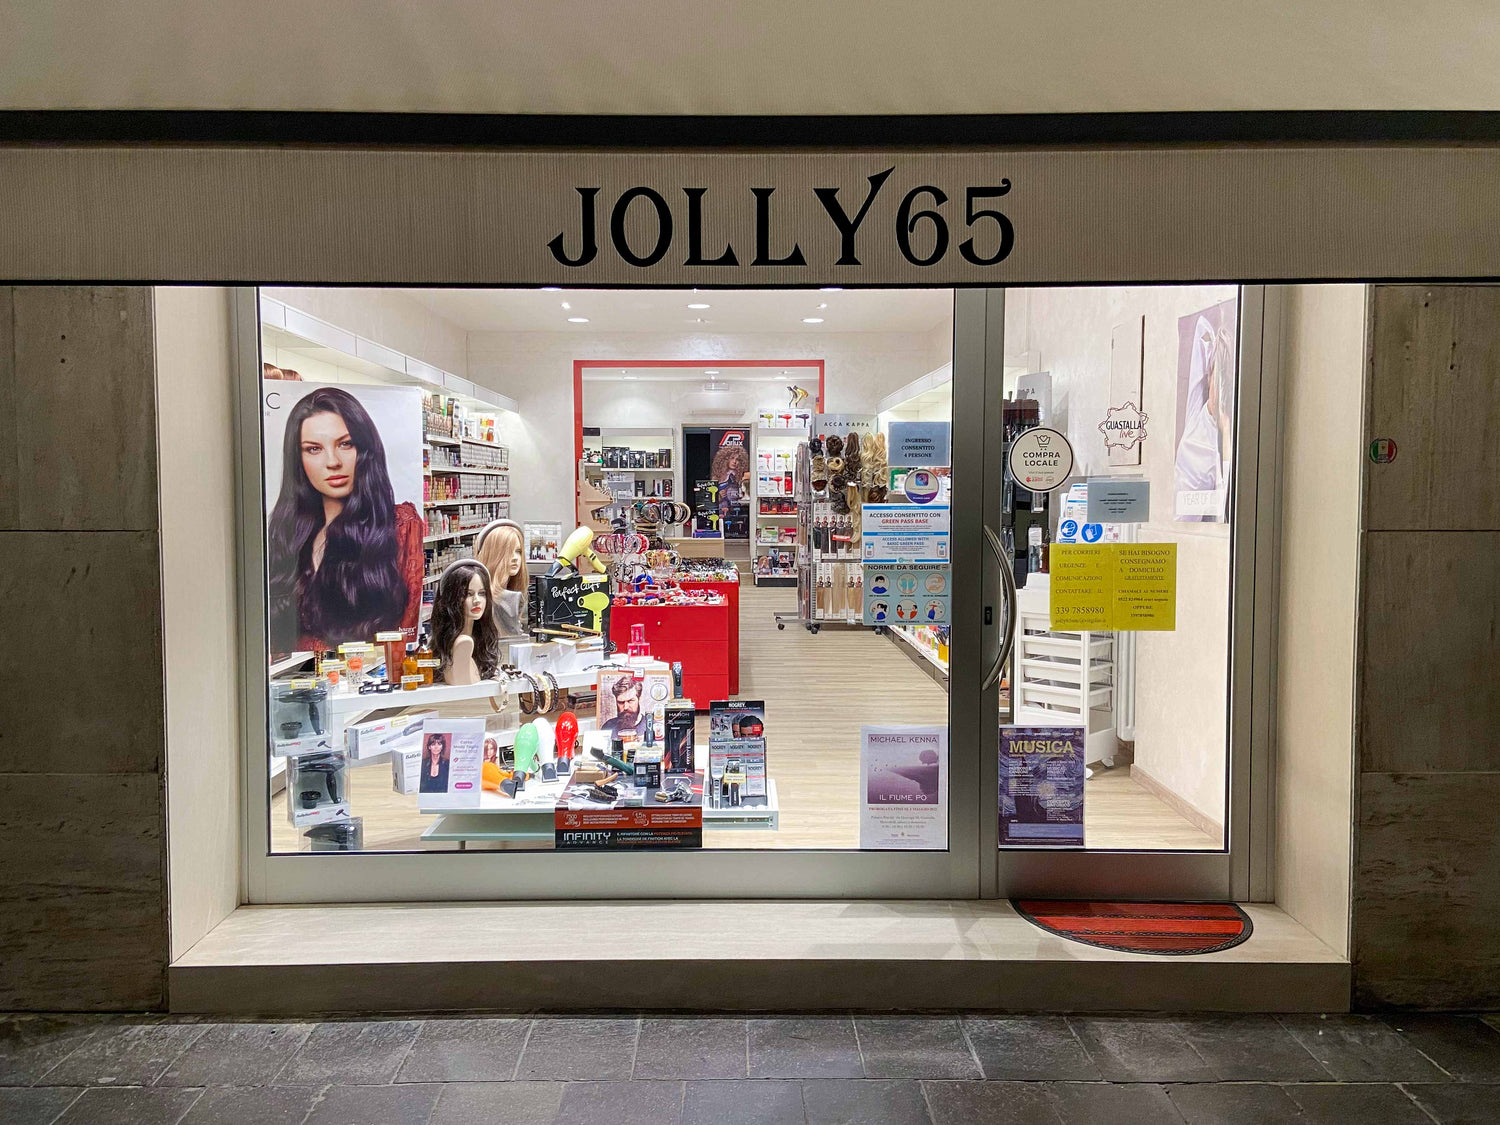 vetrina jolly65 negozio parrucchieri a guastalla